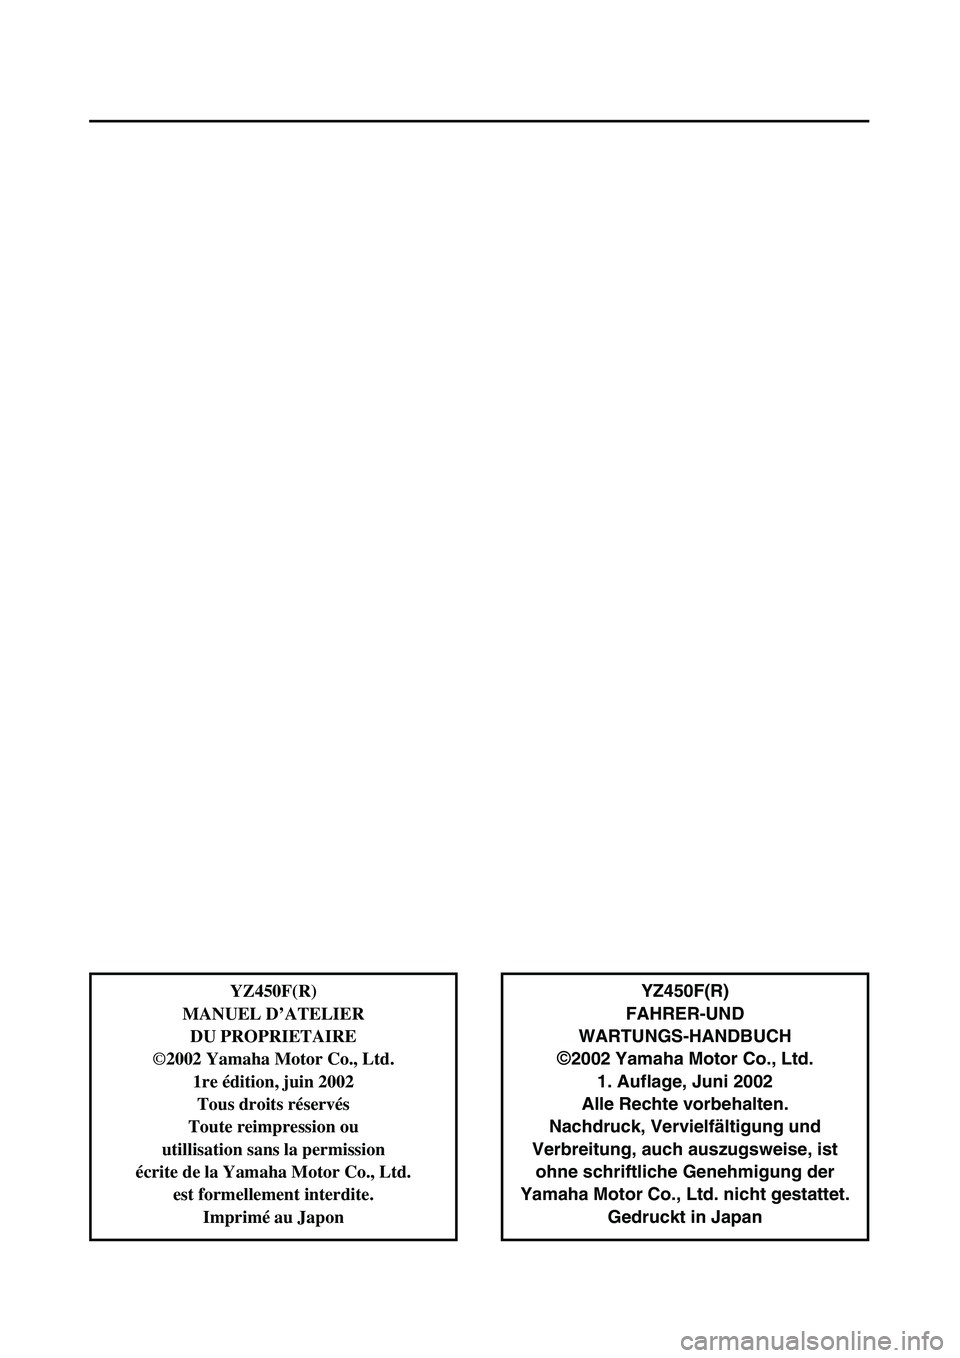 YAMAHA YZ450F 2003  Owners Manual  
YZ450F(R)
FAHRER-UND 
WARTUNGS-HANDBUCH  
©  
2002 Yamaha Motor Co., Ltd.
1. Auflage, Juni 2002
Alle Rechte vorbehalten.
Nachdruck, Vervielfältigung und
Verbreitung, auch auszugsweise, ist
ohne sc